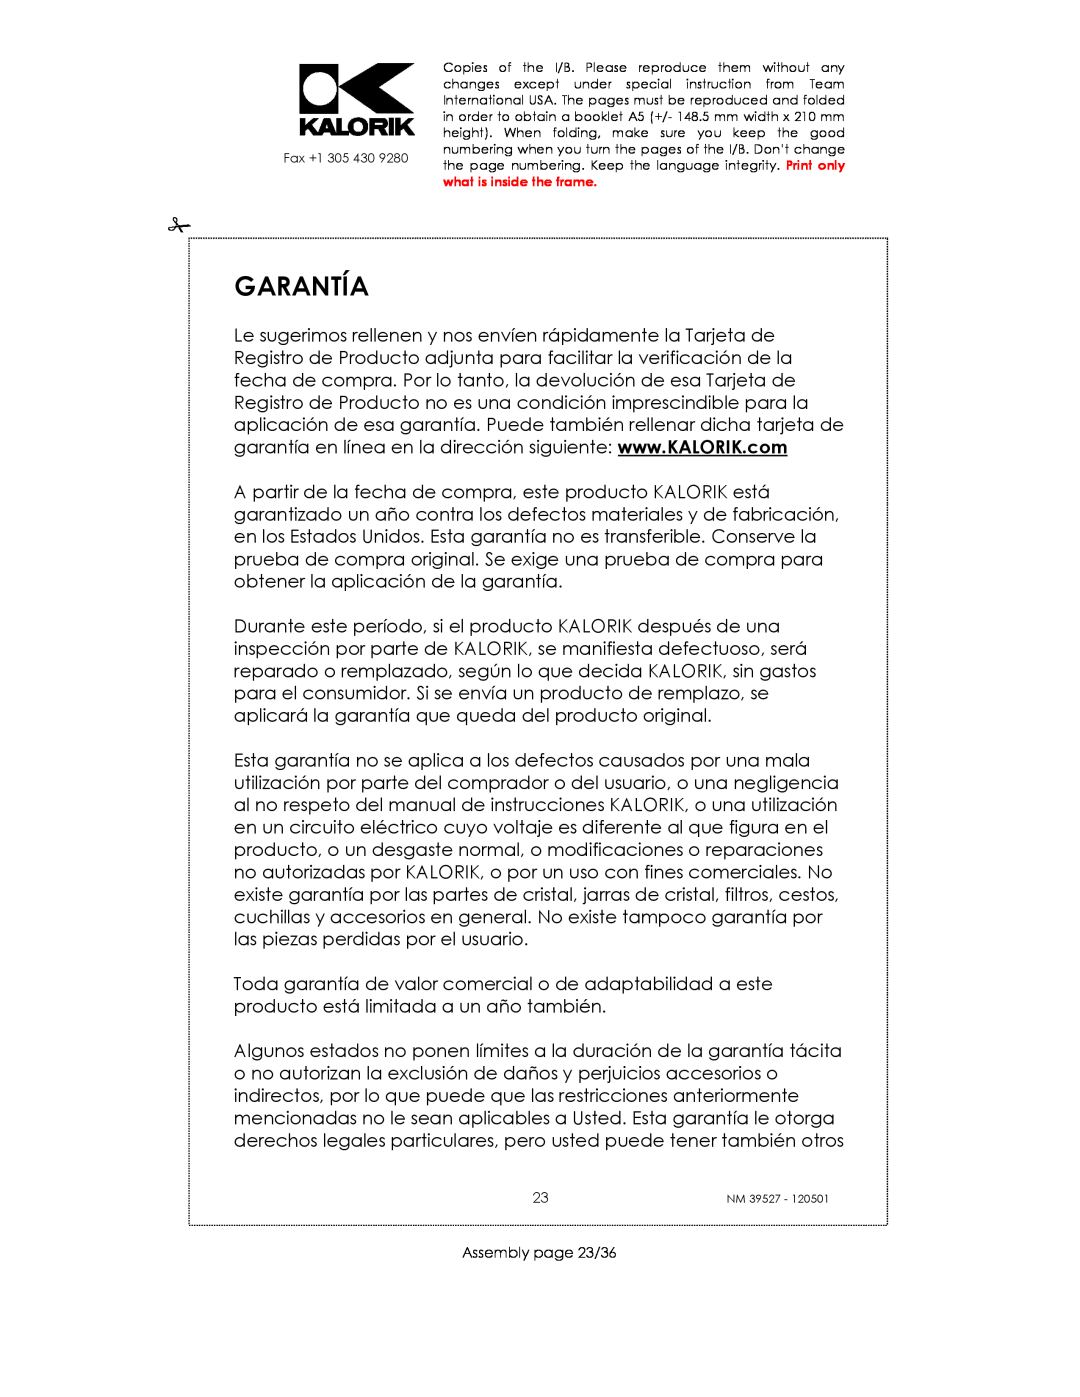 Kalorik NM 39527 manual Garantía, Assembly page 23/36 